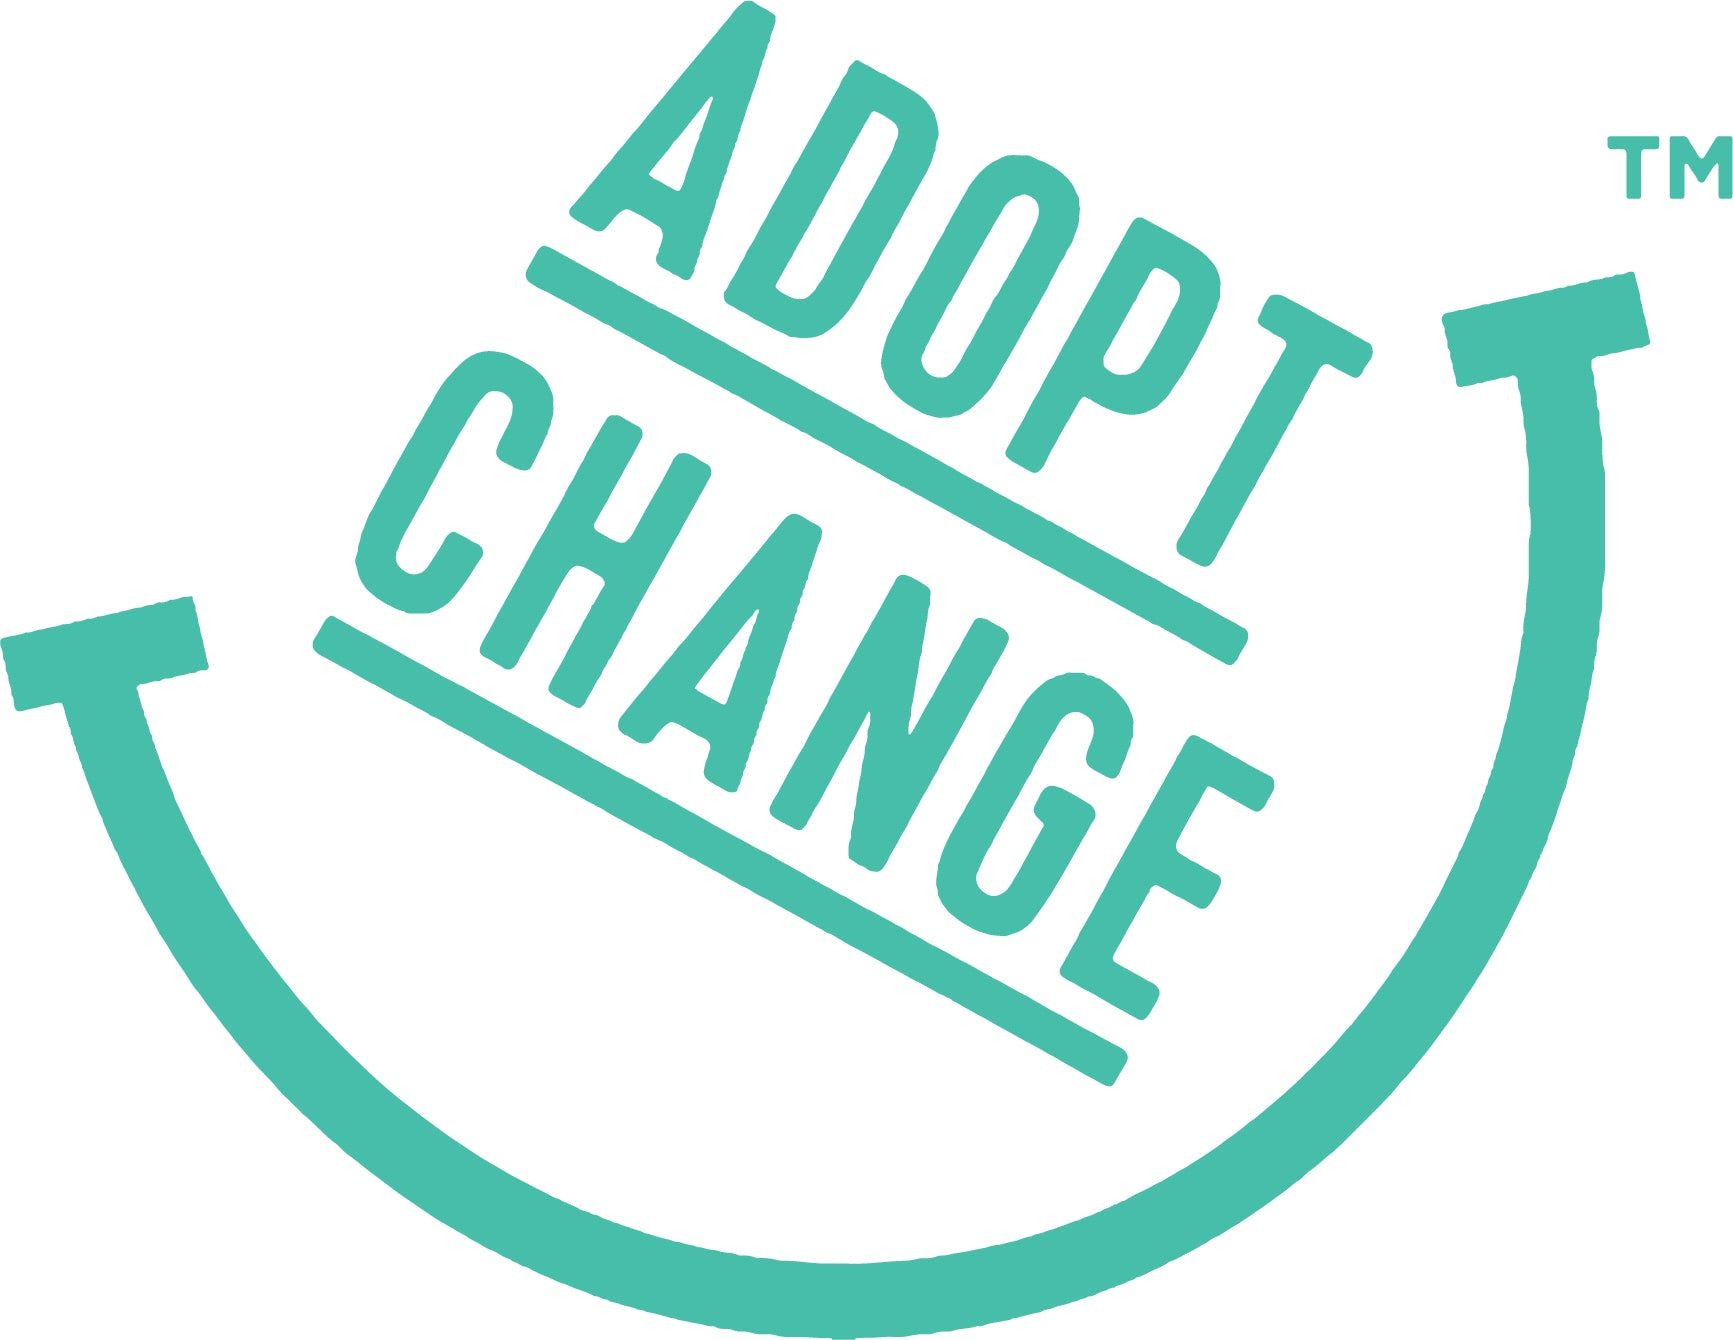 Adopt Change logo